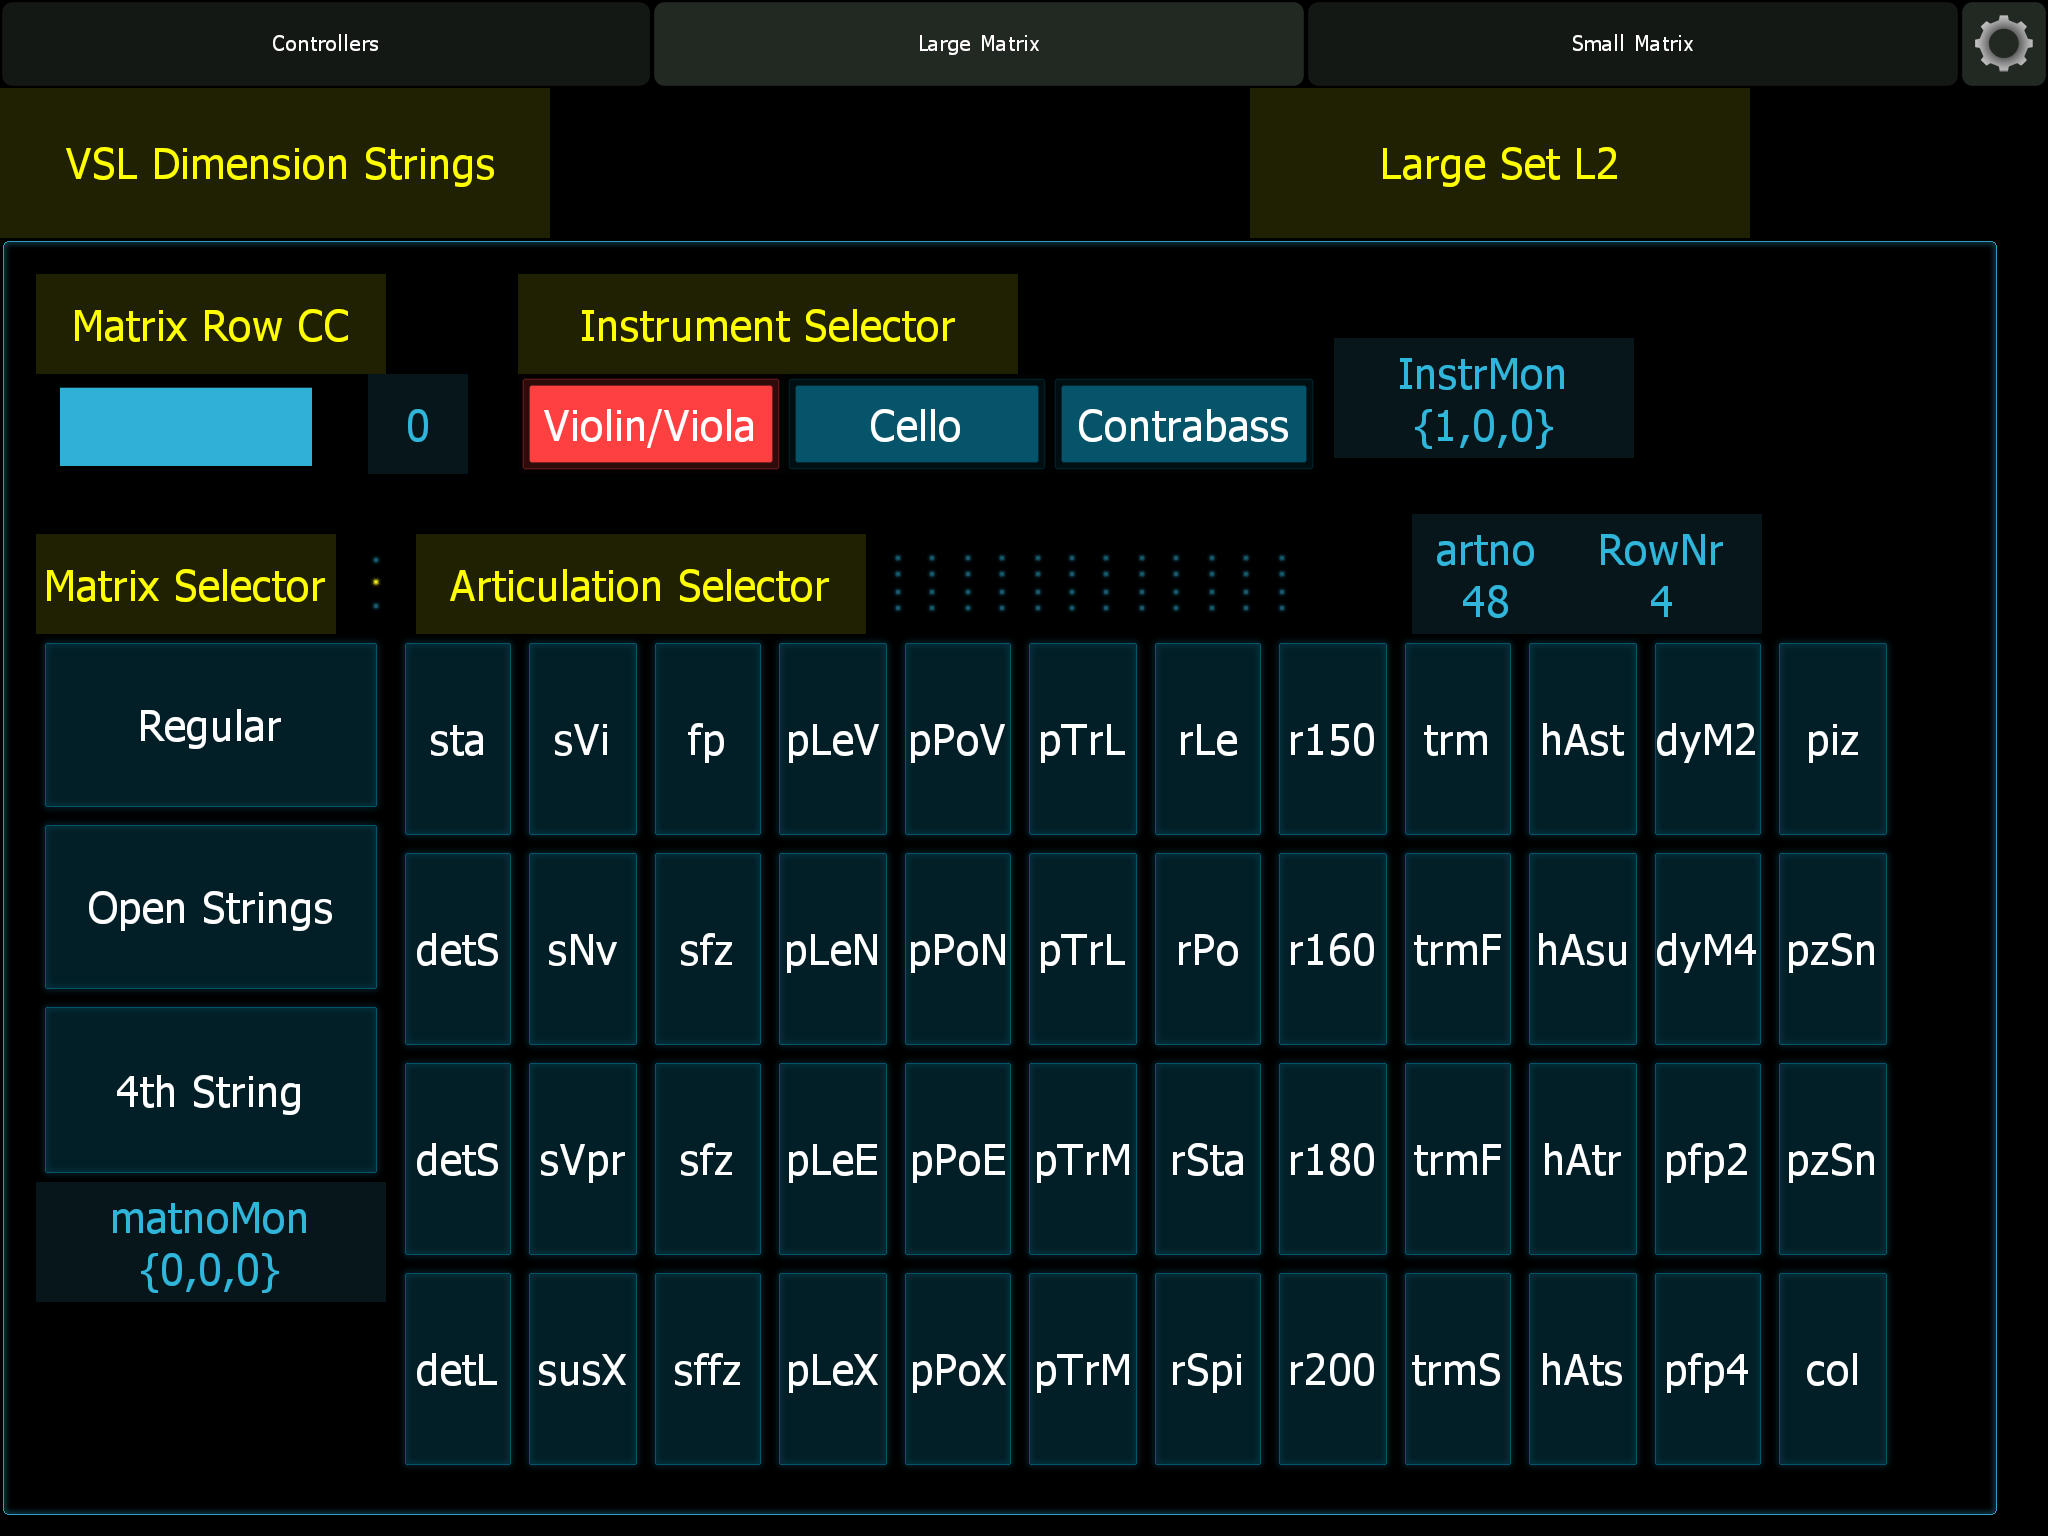 Lemur Controller for VSL Dimension Strings library